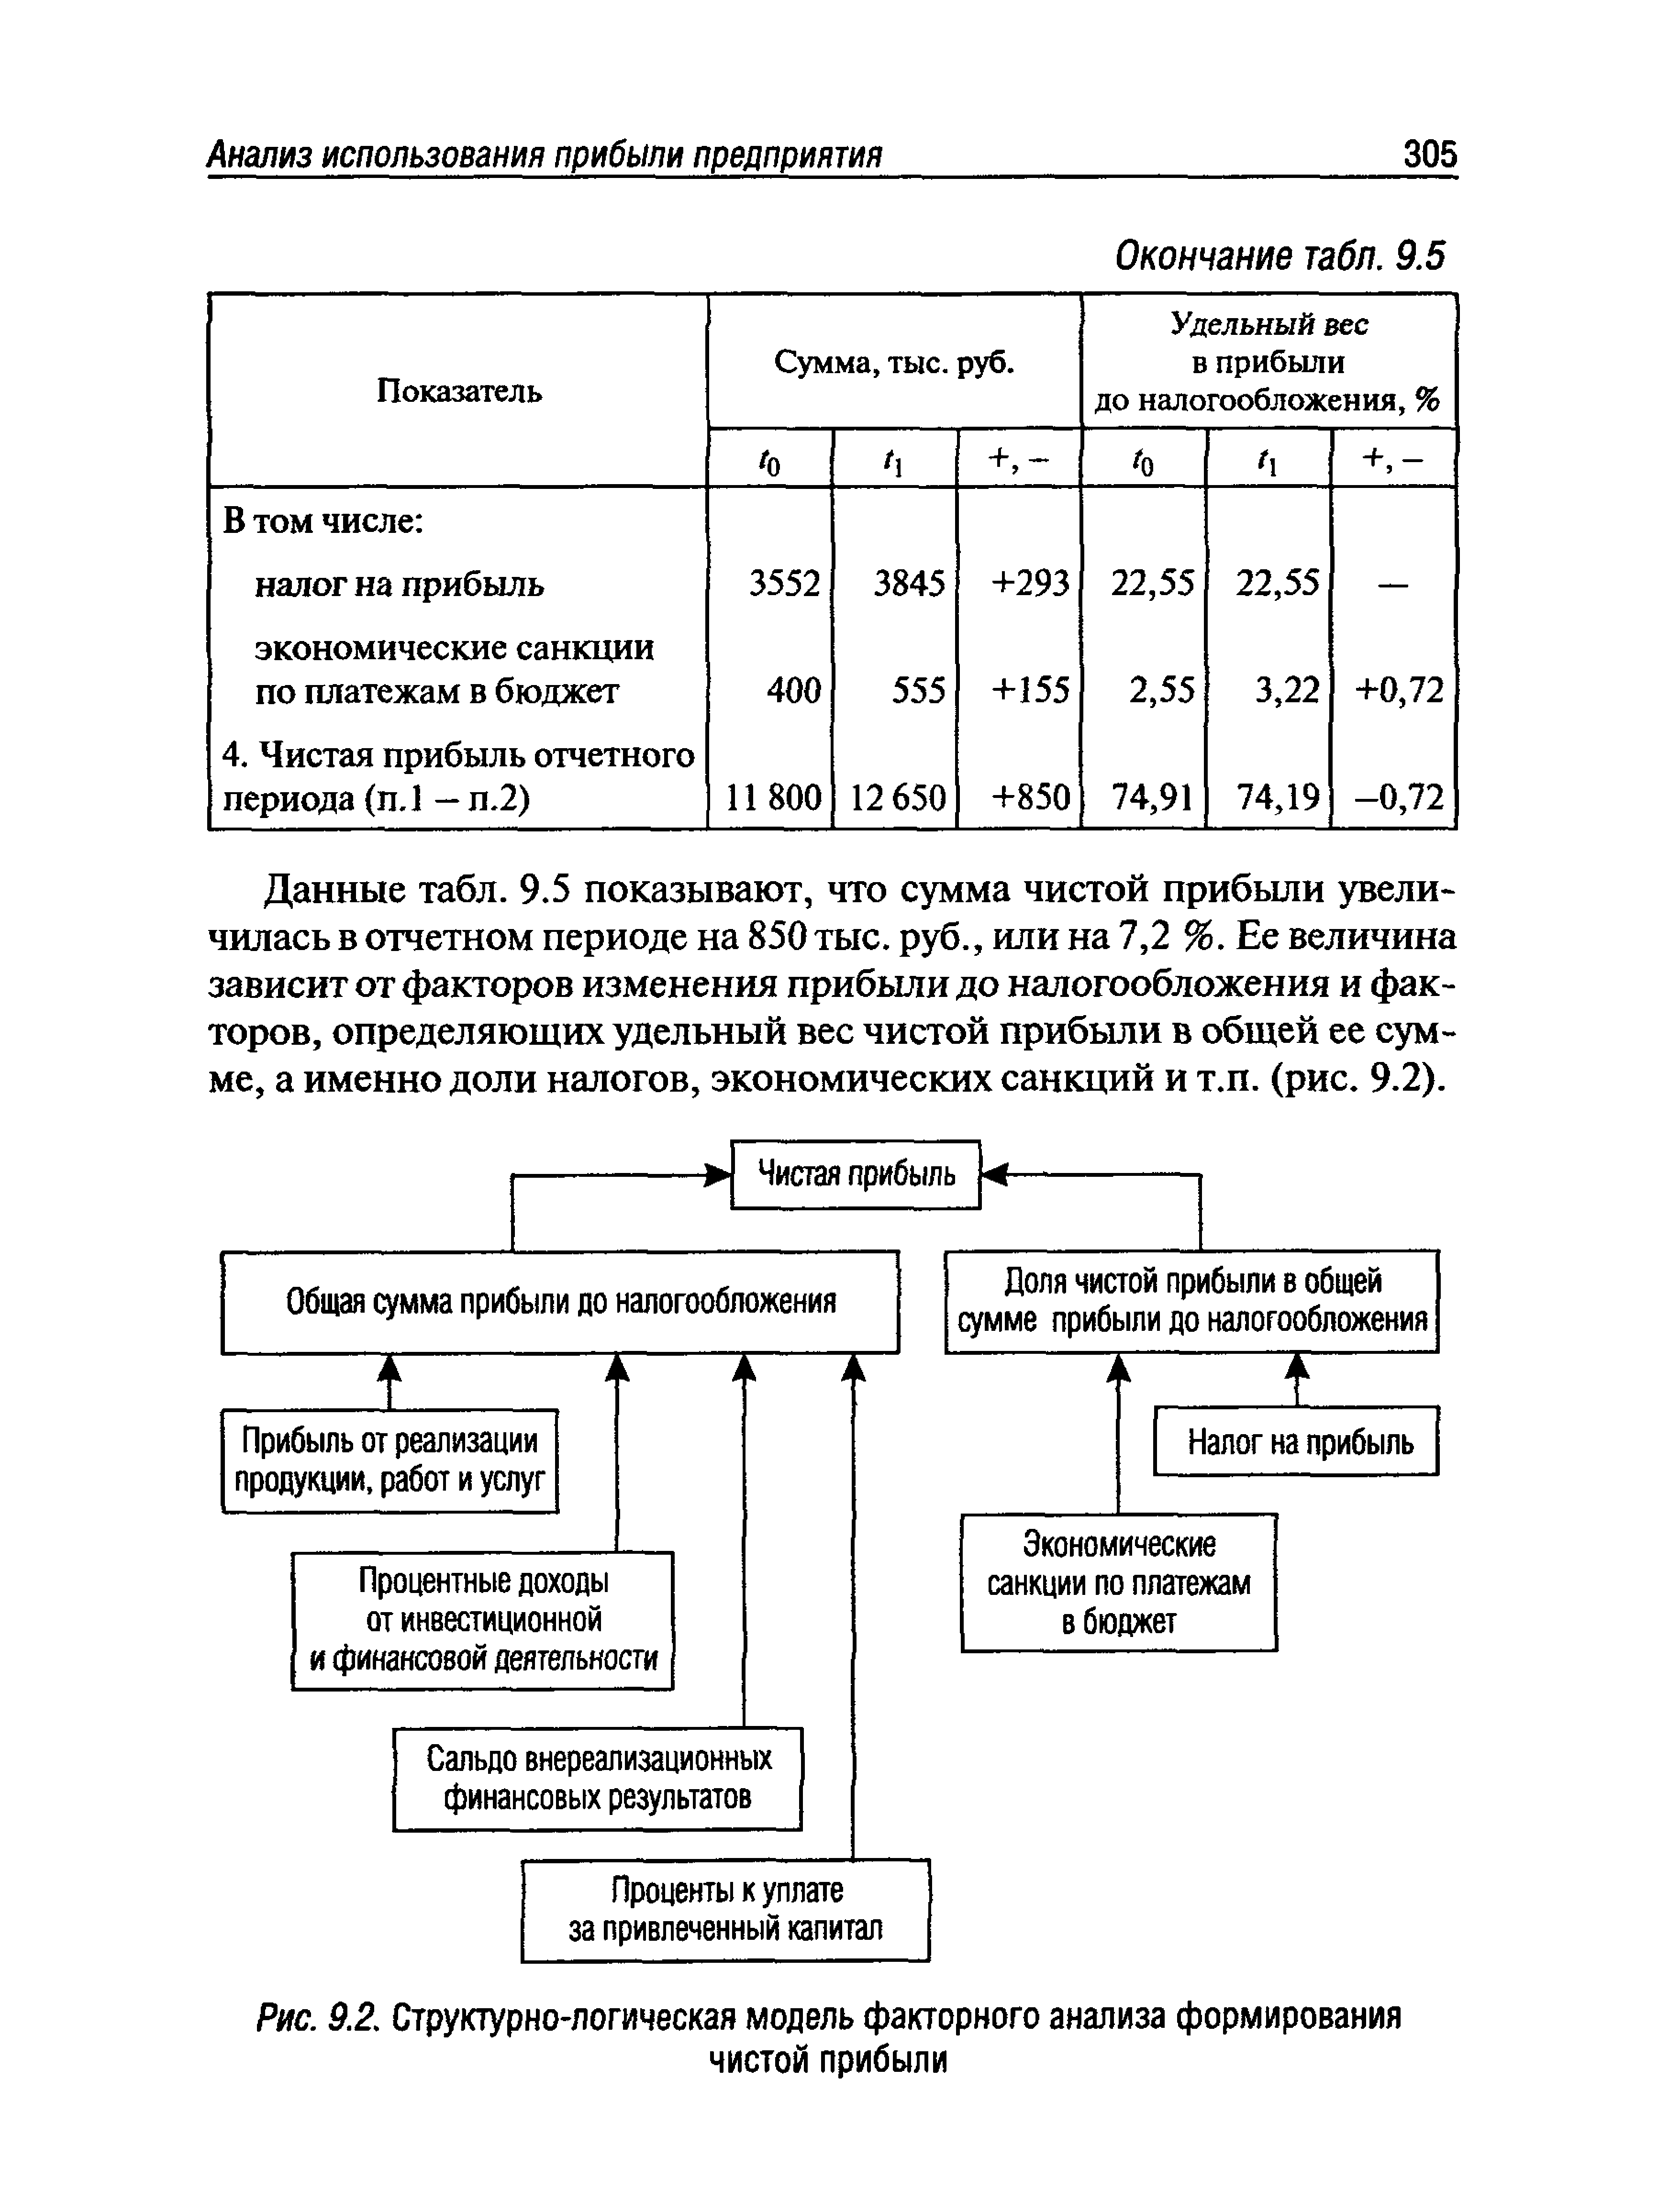 Рис. 9.2. Структурно-логическая модель факторного анализа формирования
